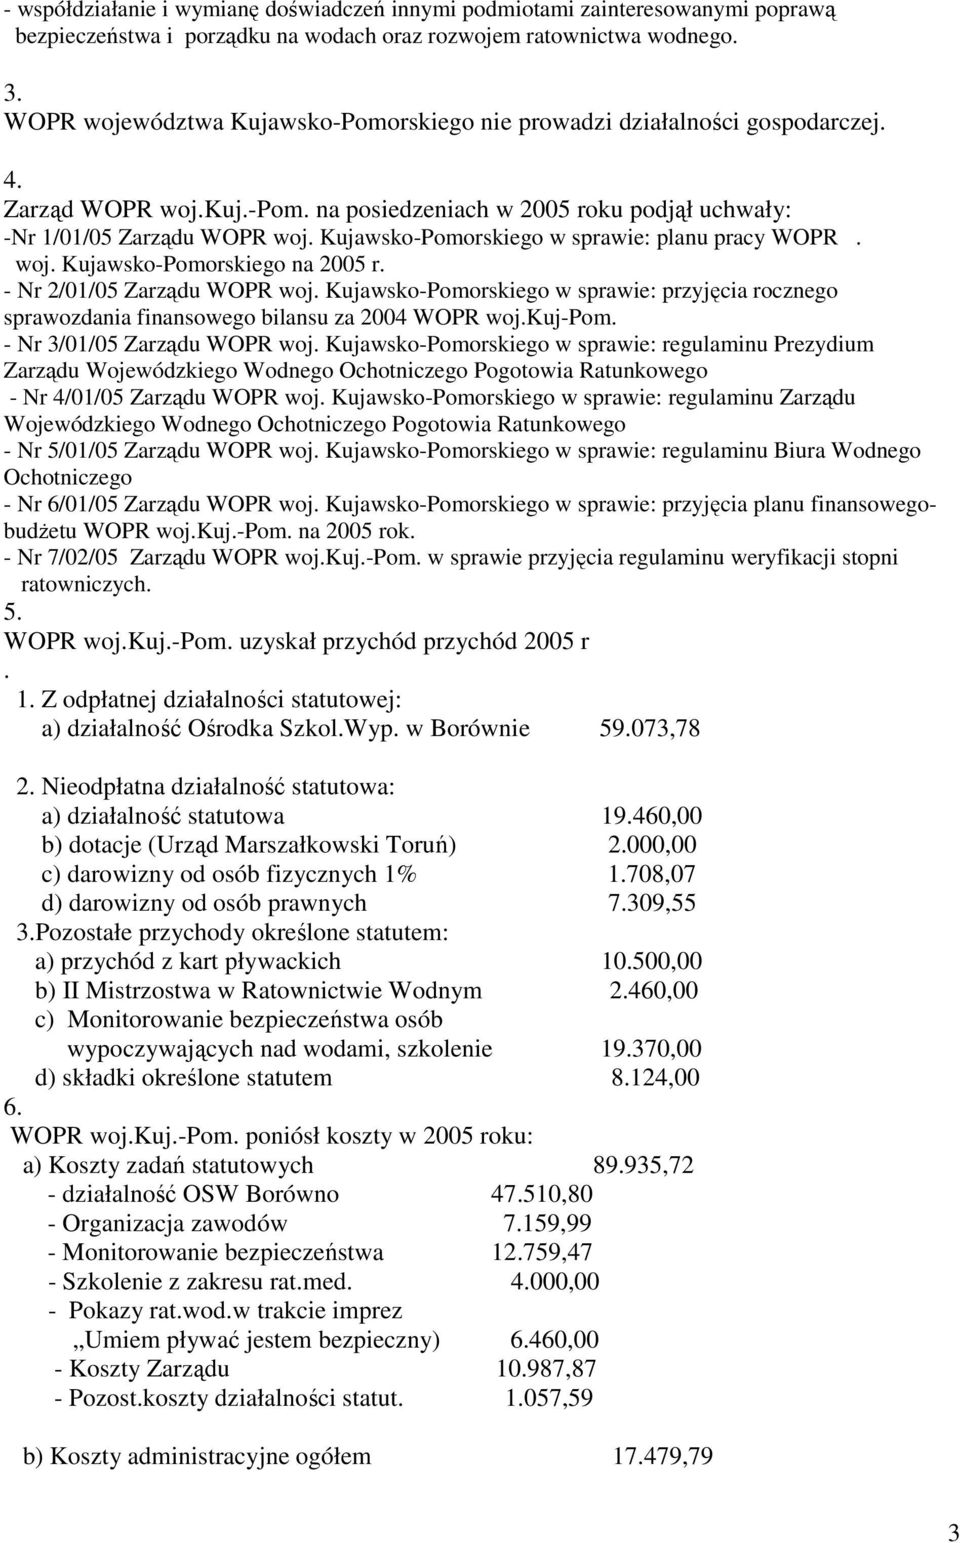 Kujawsko-Pomorskiego w sprawie: planu pracy WOPR. woj. Kujawsko-Pomorskiego na 2005 r. - Nr 2/01/05 Zarządu WOPR woj.